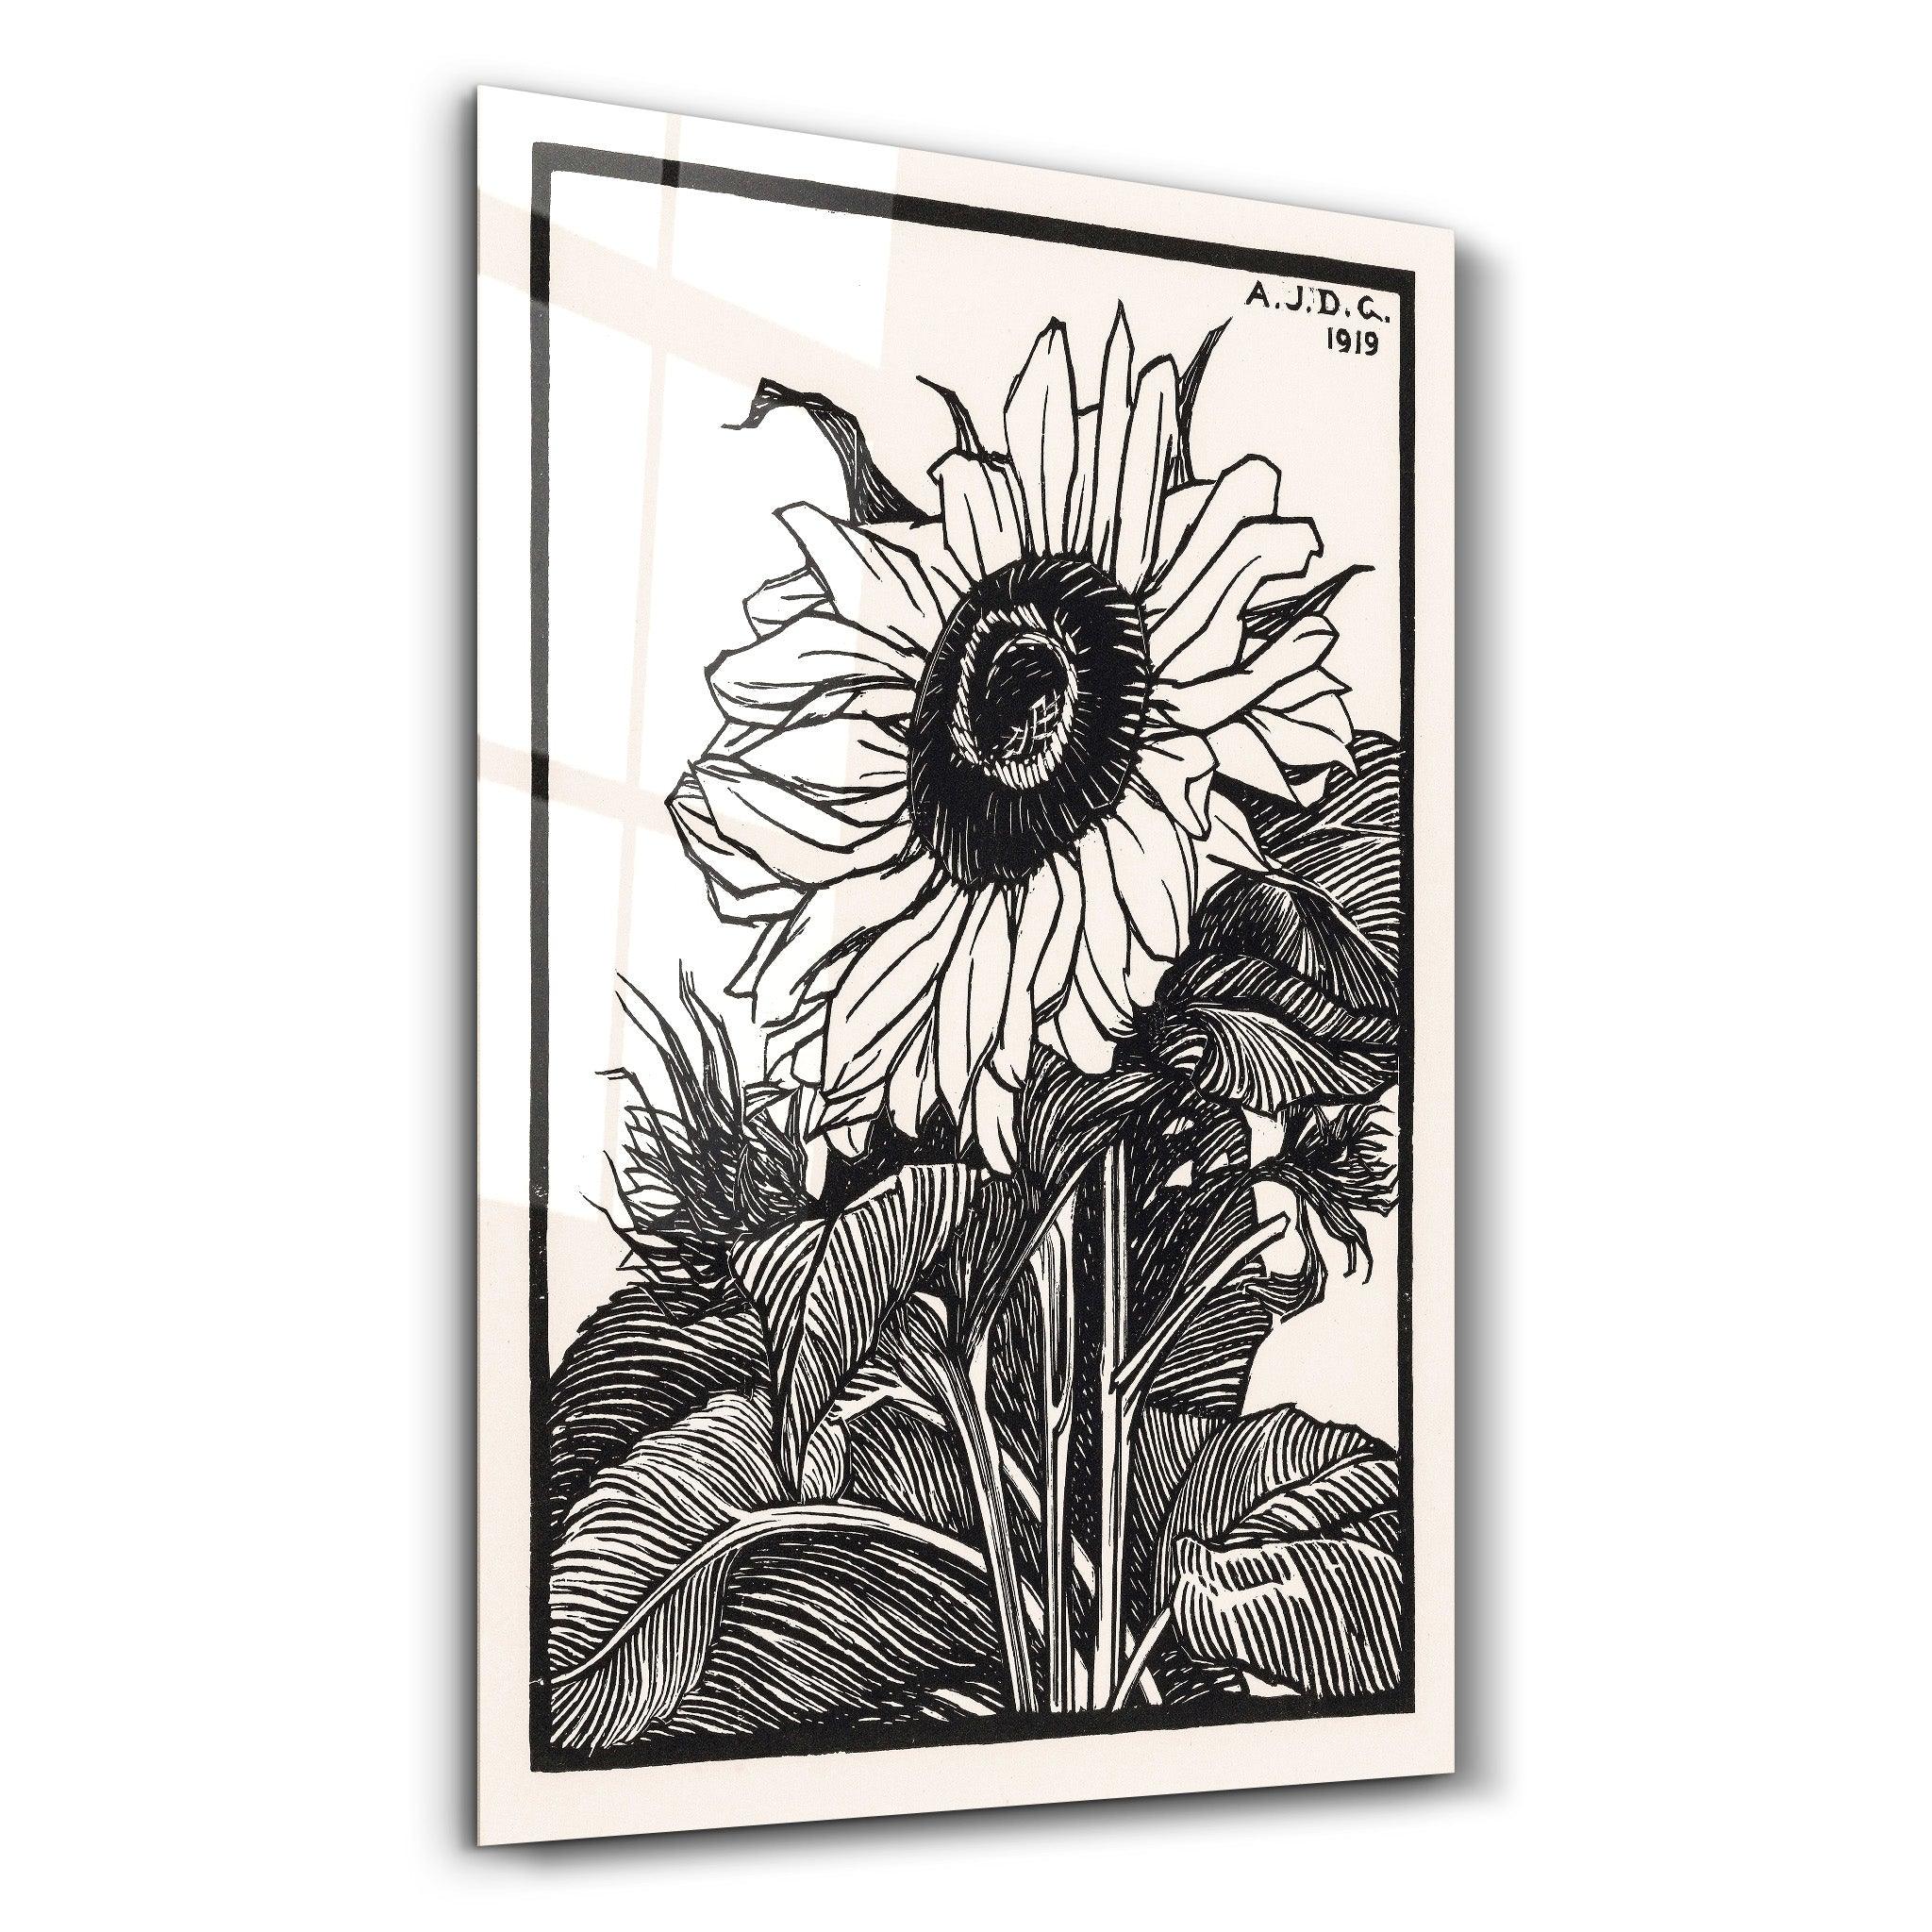 Sunflower 1919 by Julie de Graag | Gallery Print Collection Glass Wall Art - ArtDesigna Glass Printing Wall Art